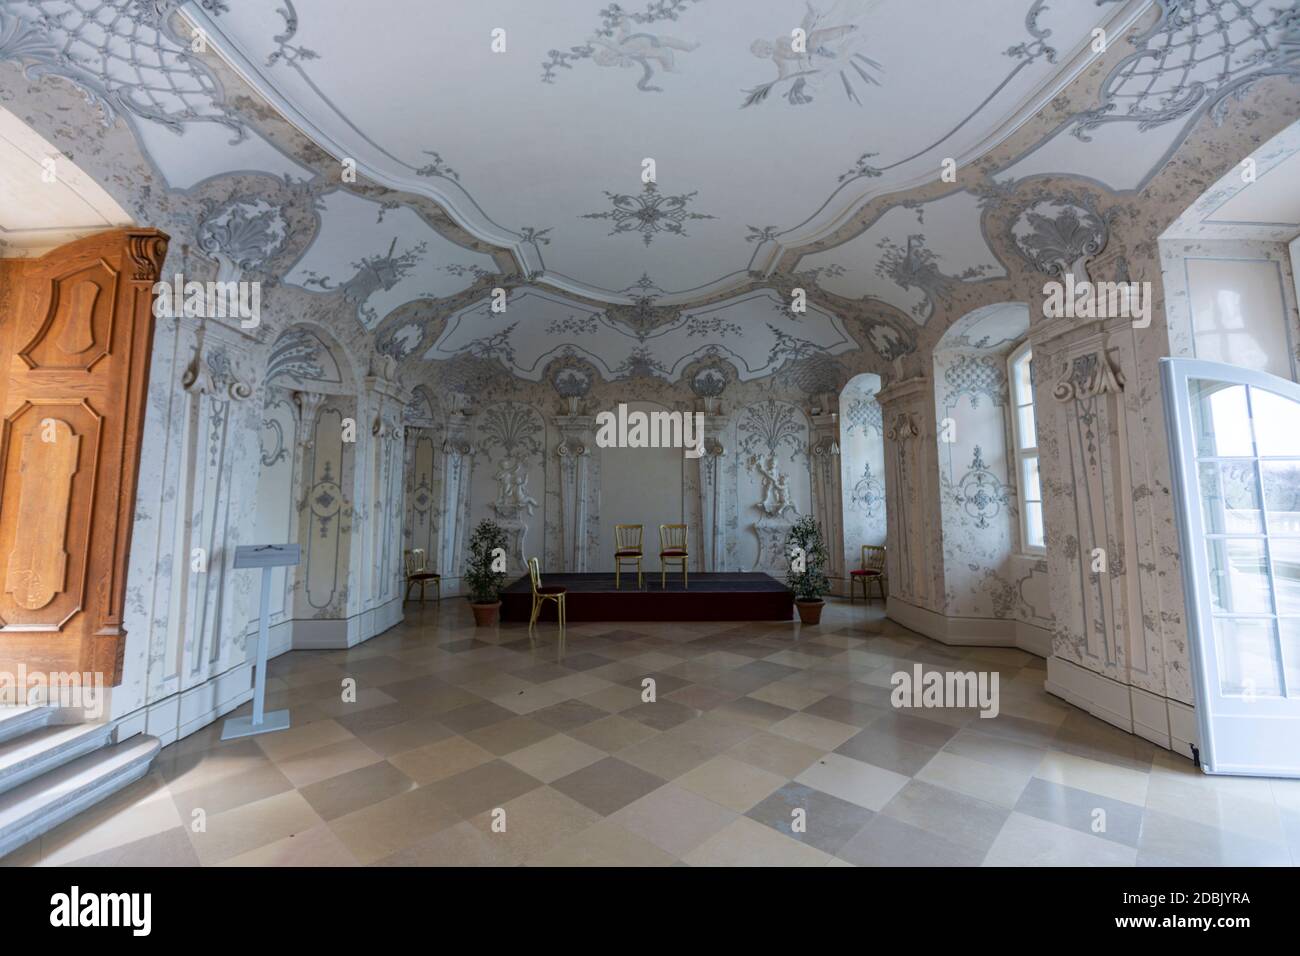 Sala Terrena, Schloss Hof, Barockstil des Architekten Johann Lukas von Hildebrandt, Marchfeld, Österreich Stockfoto